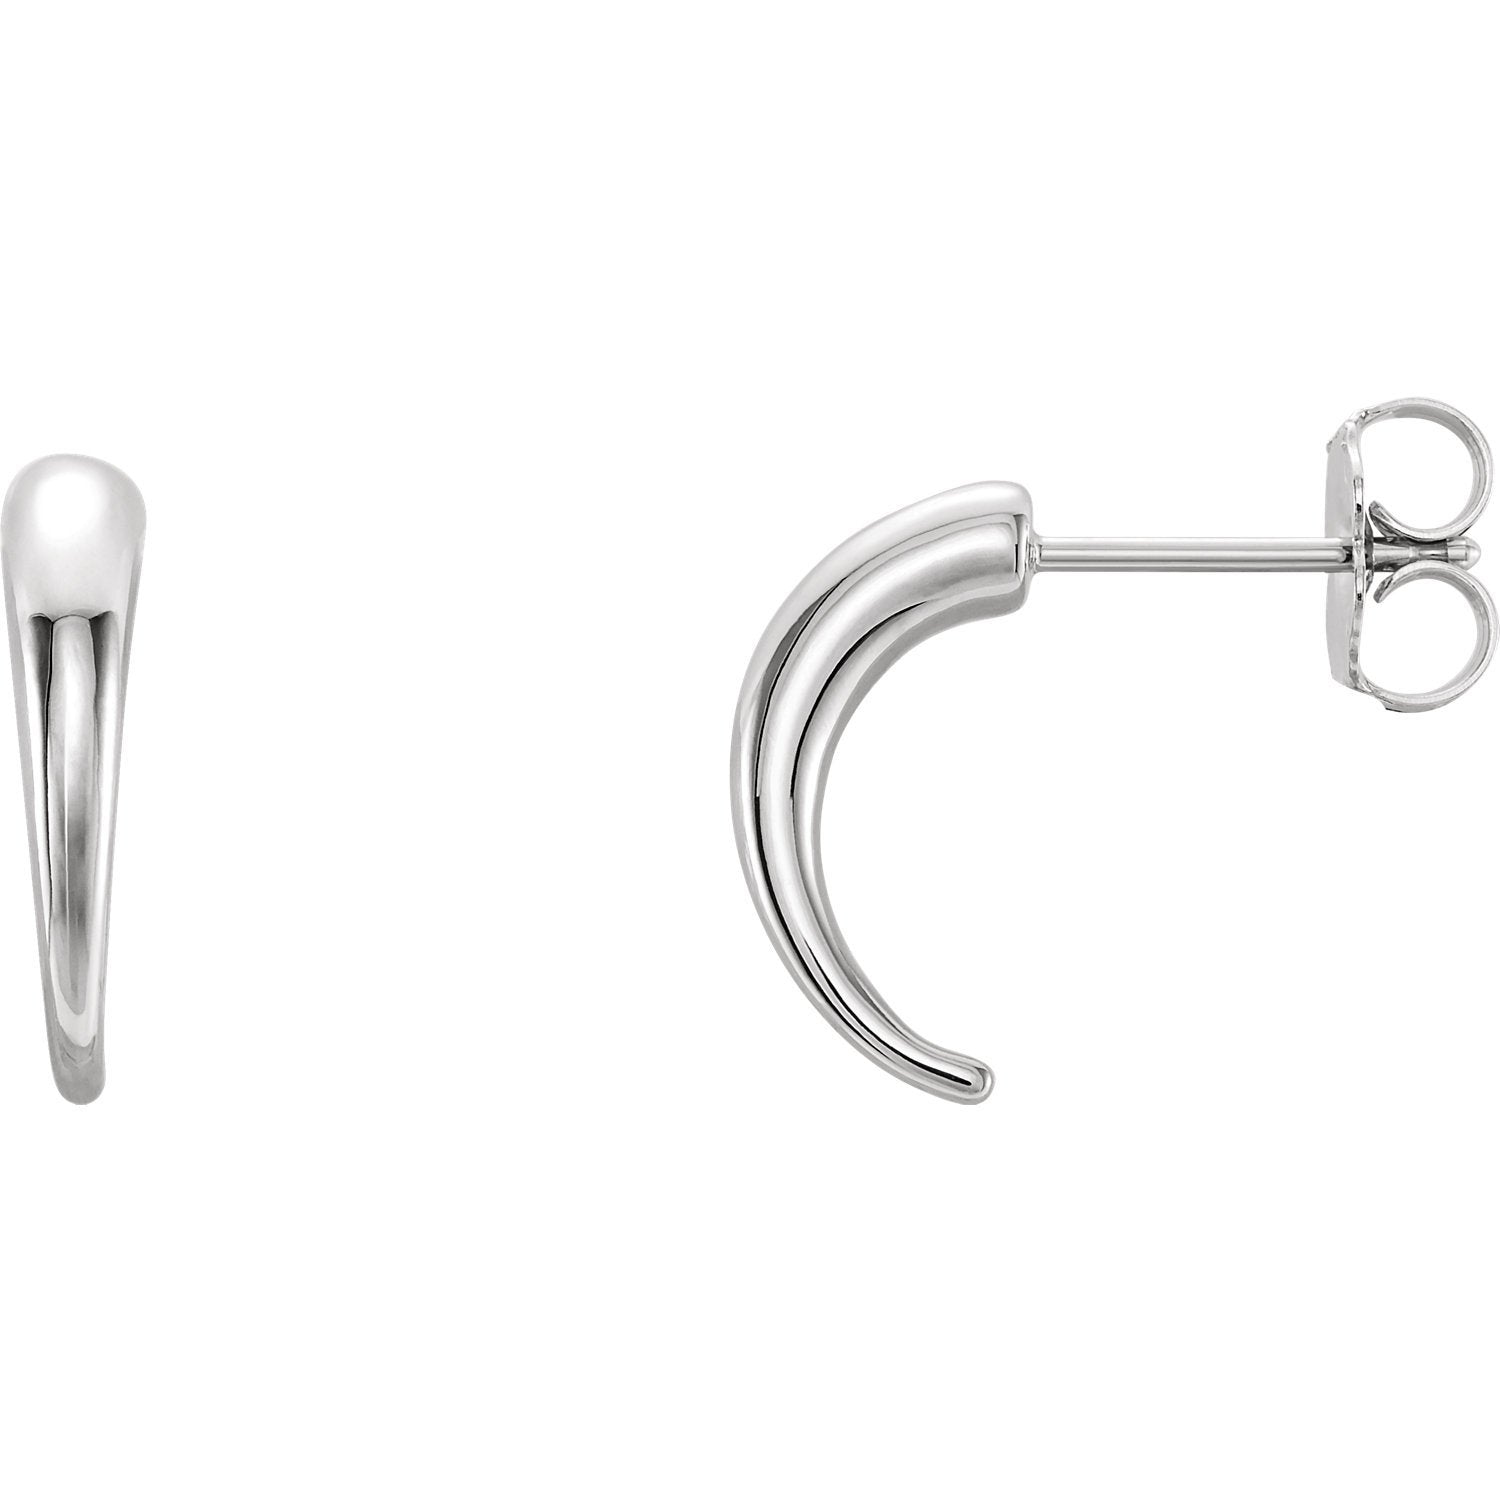 Horn Shaped J-Hoop Earrings - 14K White Gold, Sterling Silver, Platinum